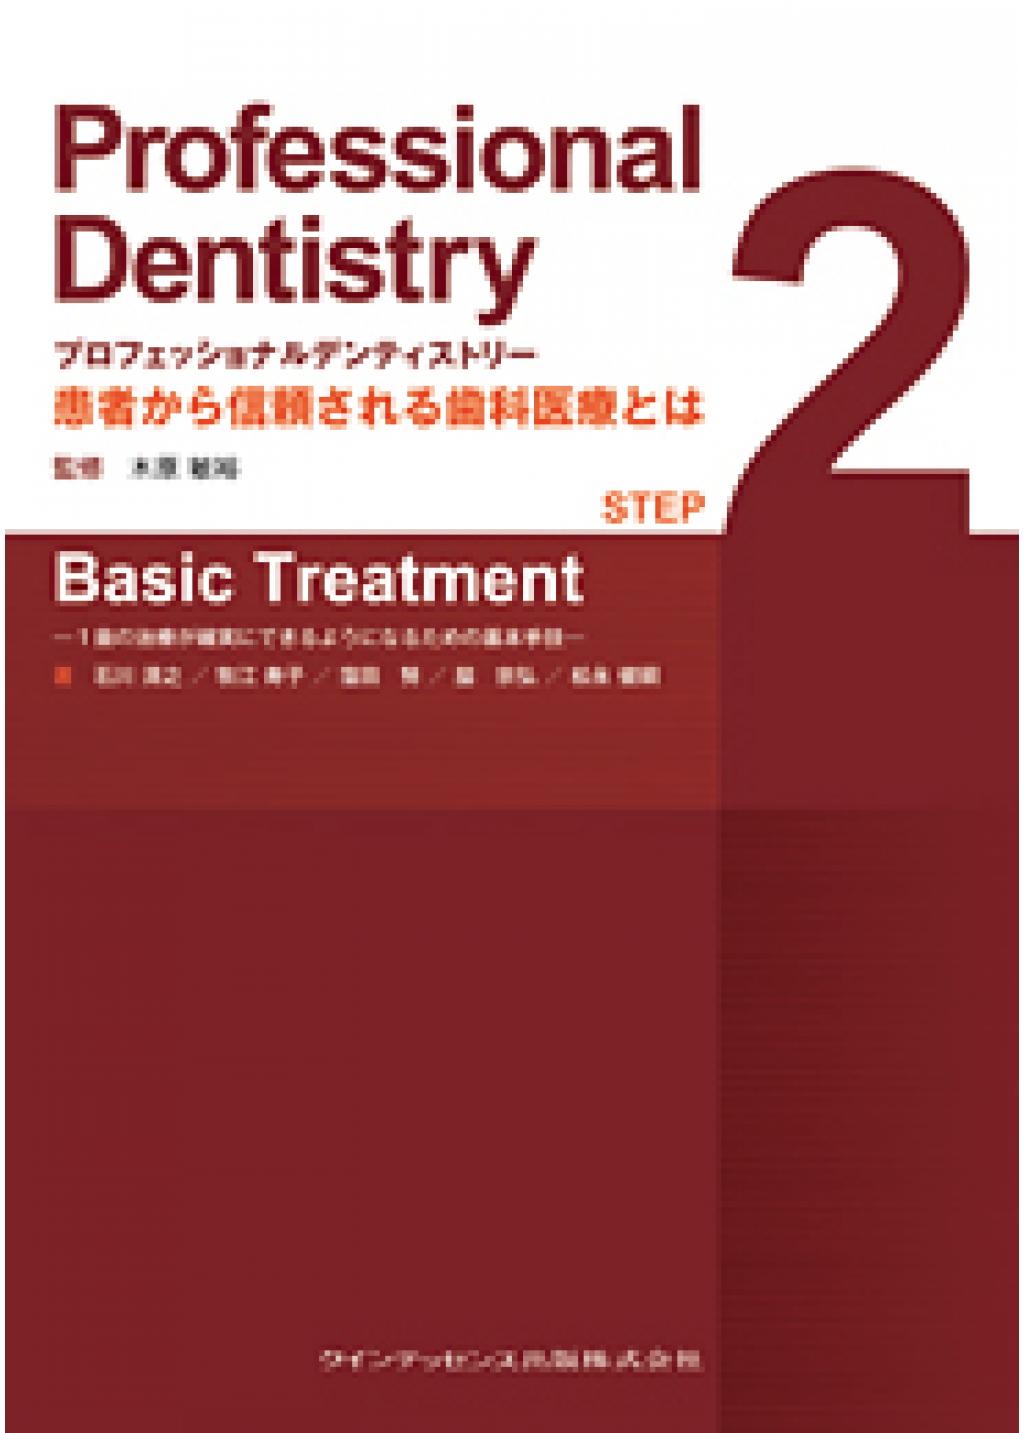 プロフェッショナルデンティストリー STEP 2 Basic Treatmentの購入 